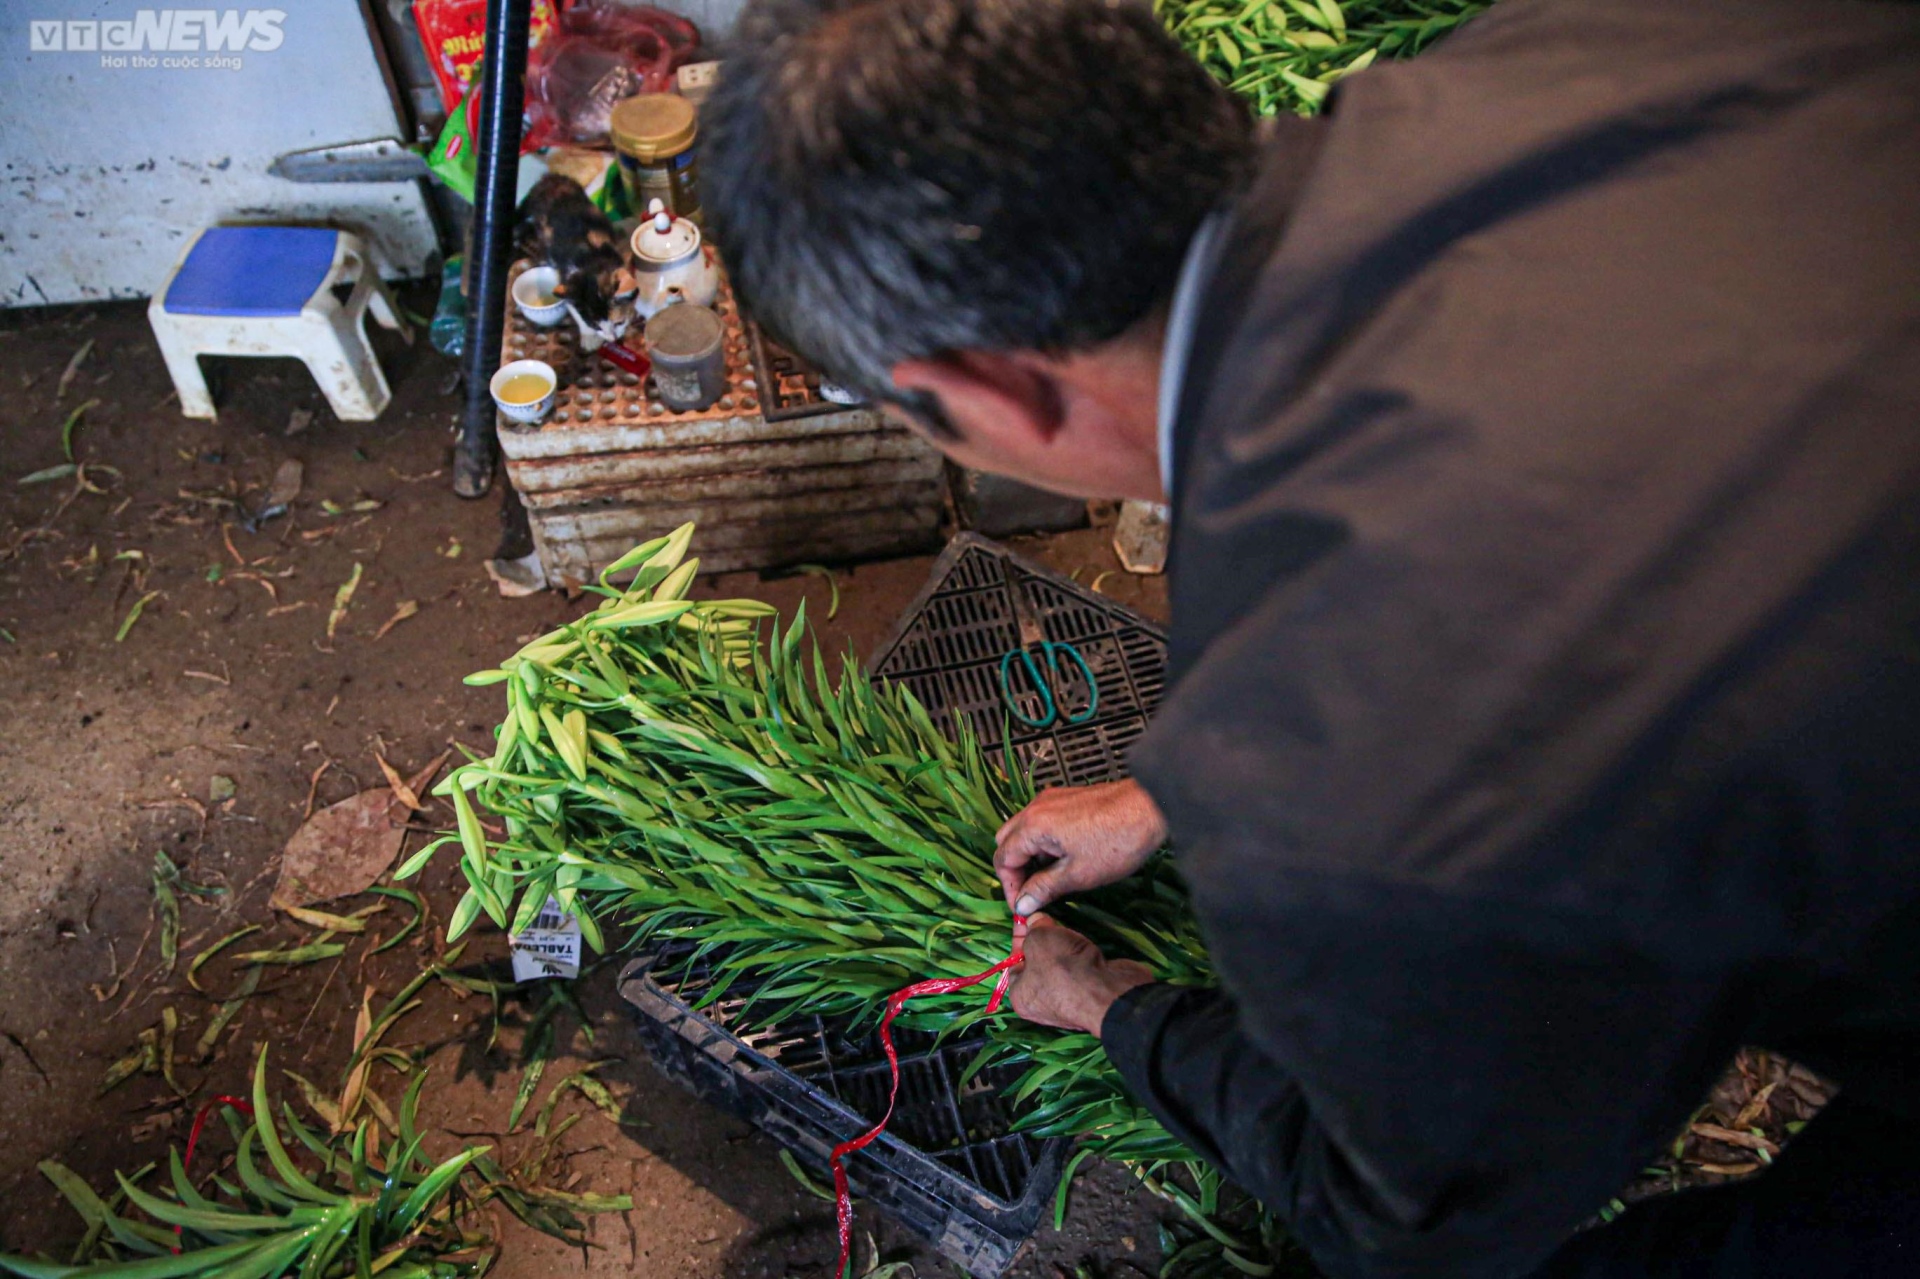 Hoa loa kèn vào vụ, nông dân ngoại thành Hà Nội thu chục triệu đồng mỗi ngày - 12